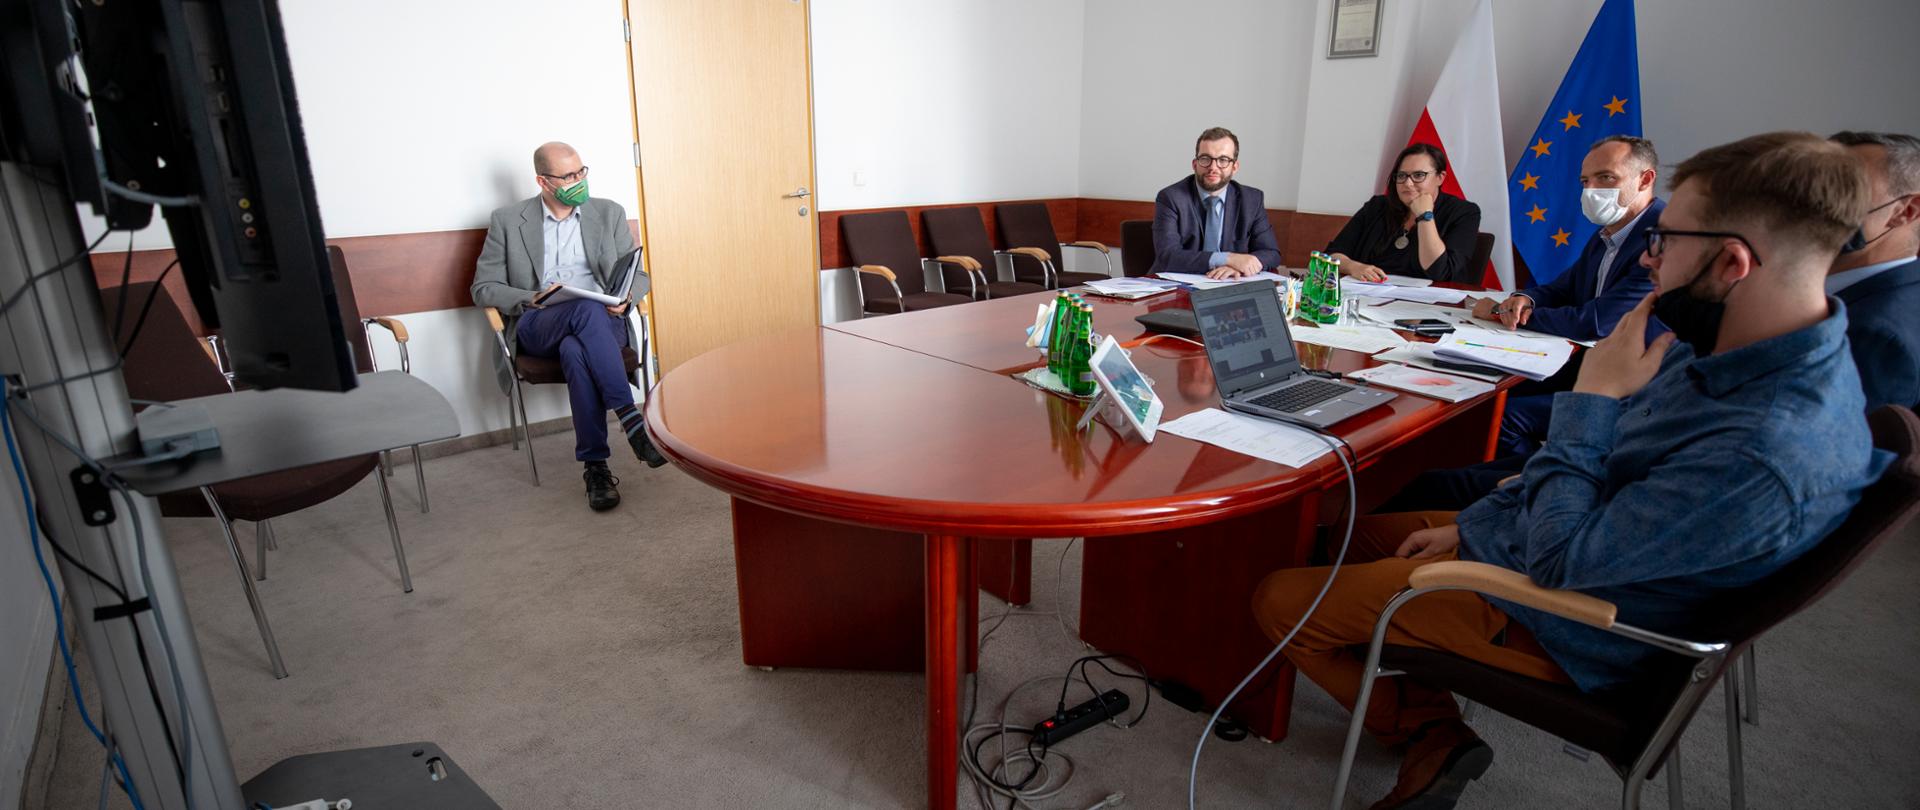 Na sali przy okrągłym stole siedzi grupa osób. Od lewej wiceminister G. Puda, obok minister M. Jarosińska-Jedynak.